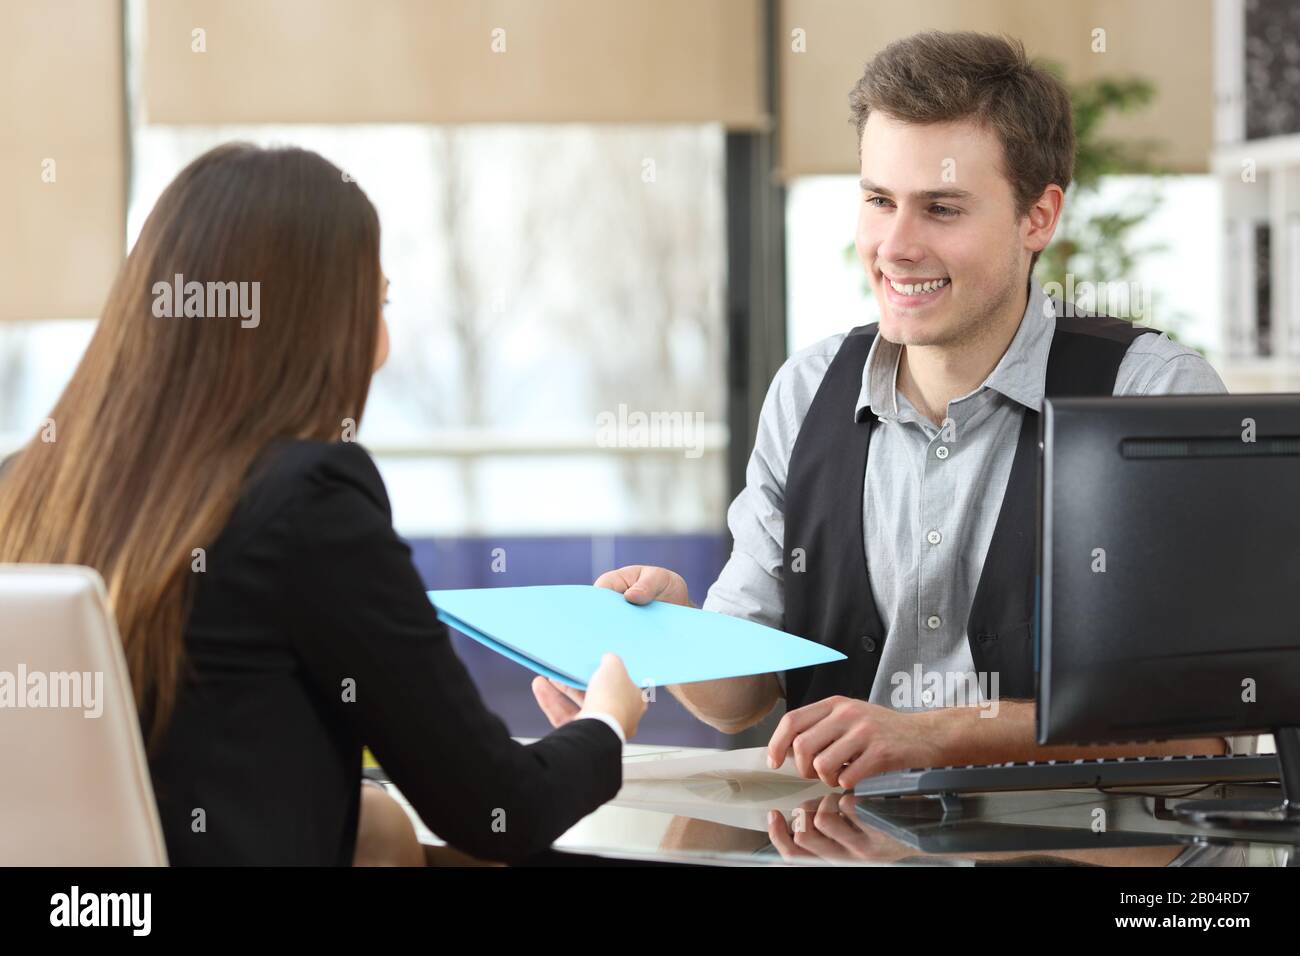 Ein Geschäftsmann, der einem Kunden, der während eines Interviews im Büro sitzt, Dokumente gibt Stockfoto